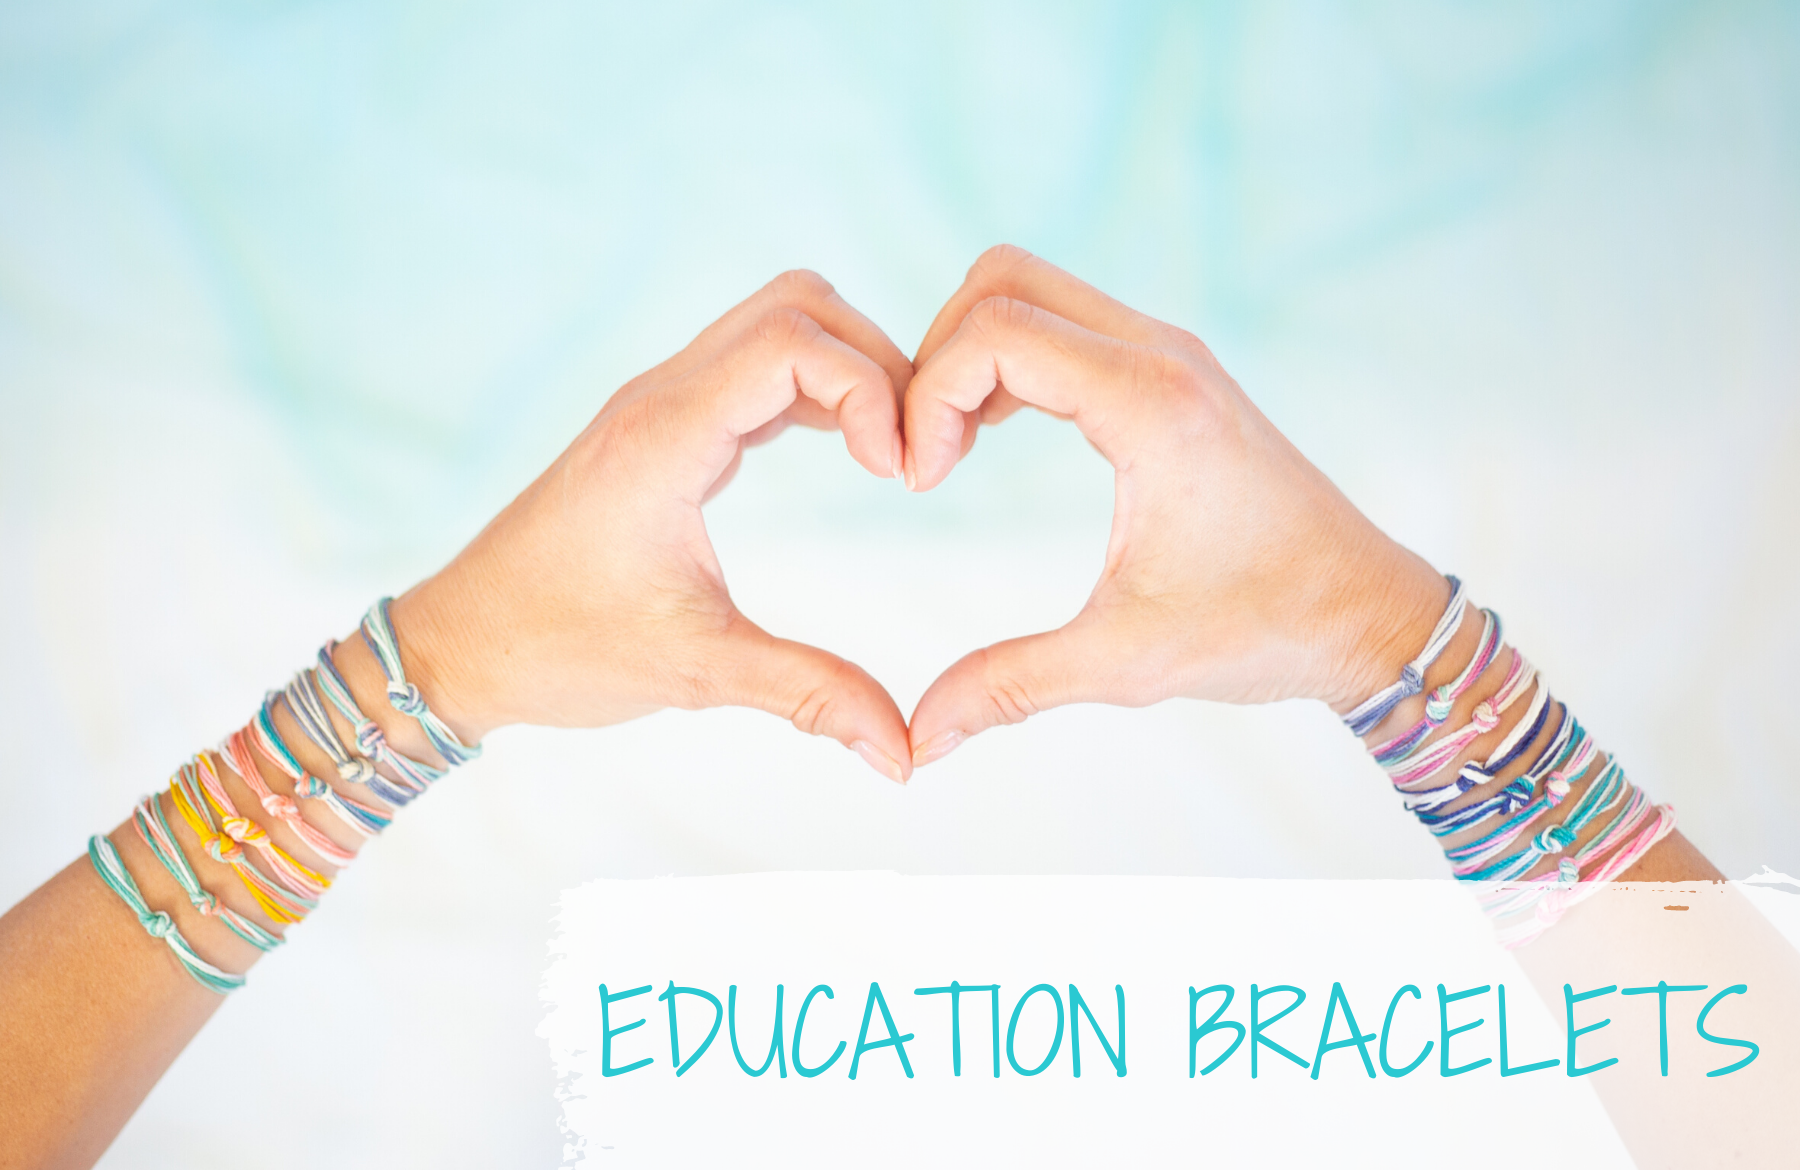 Education Bracelets